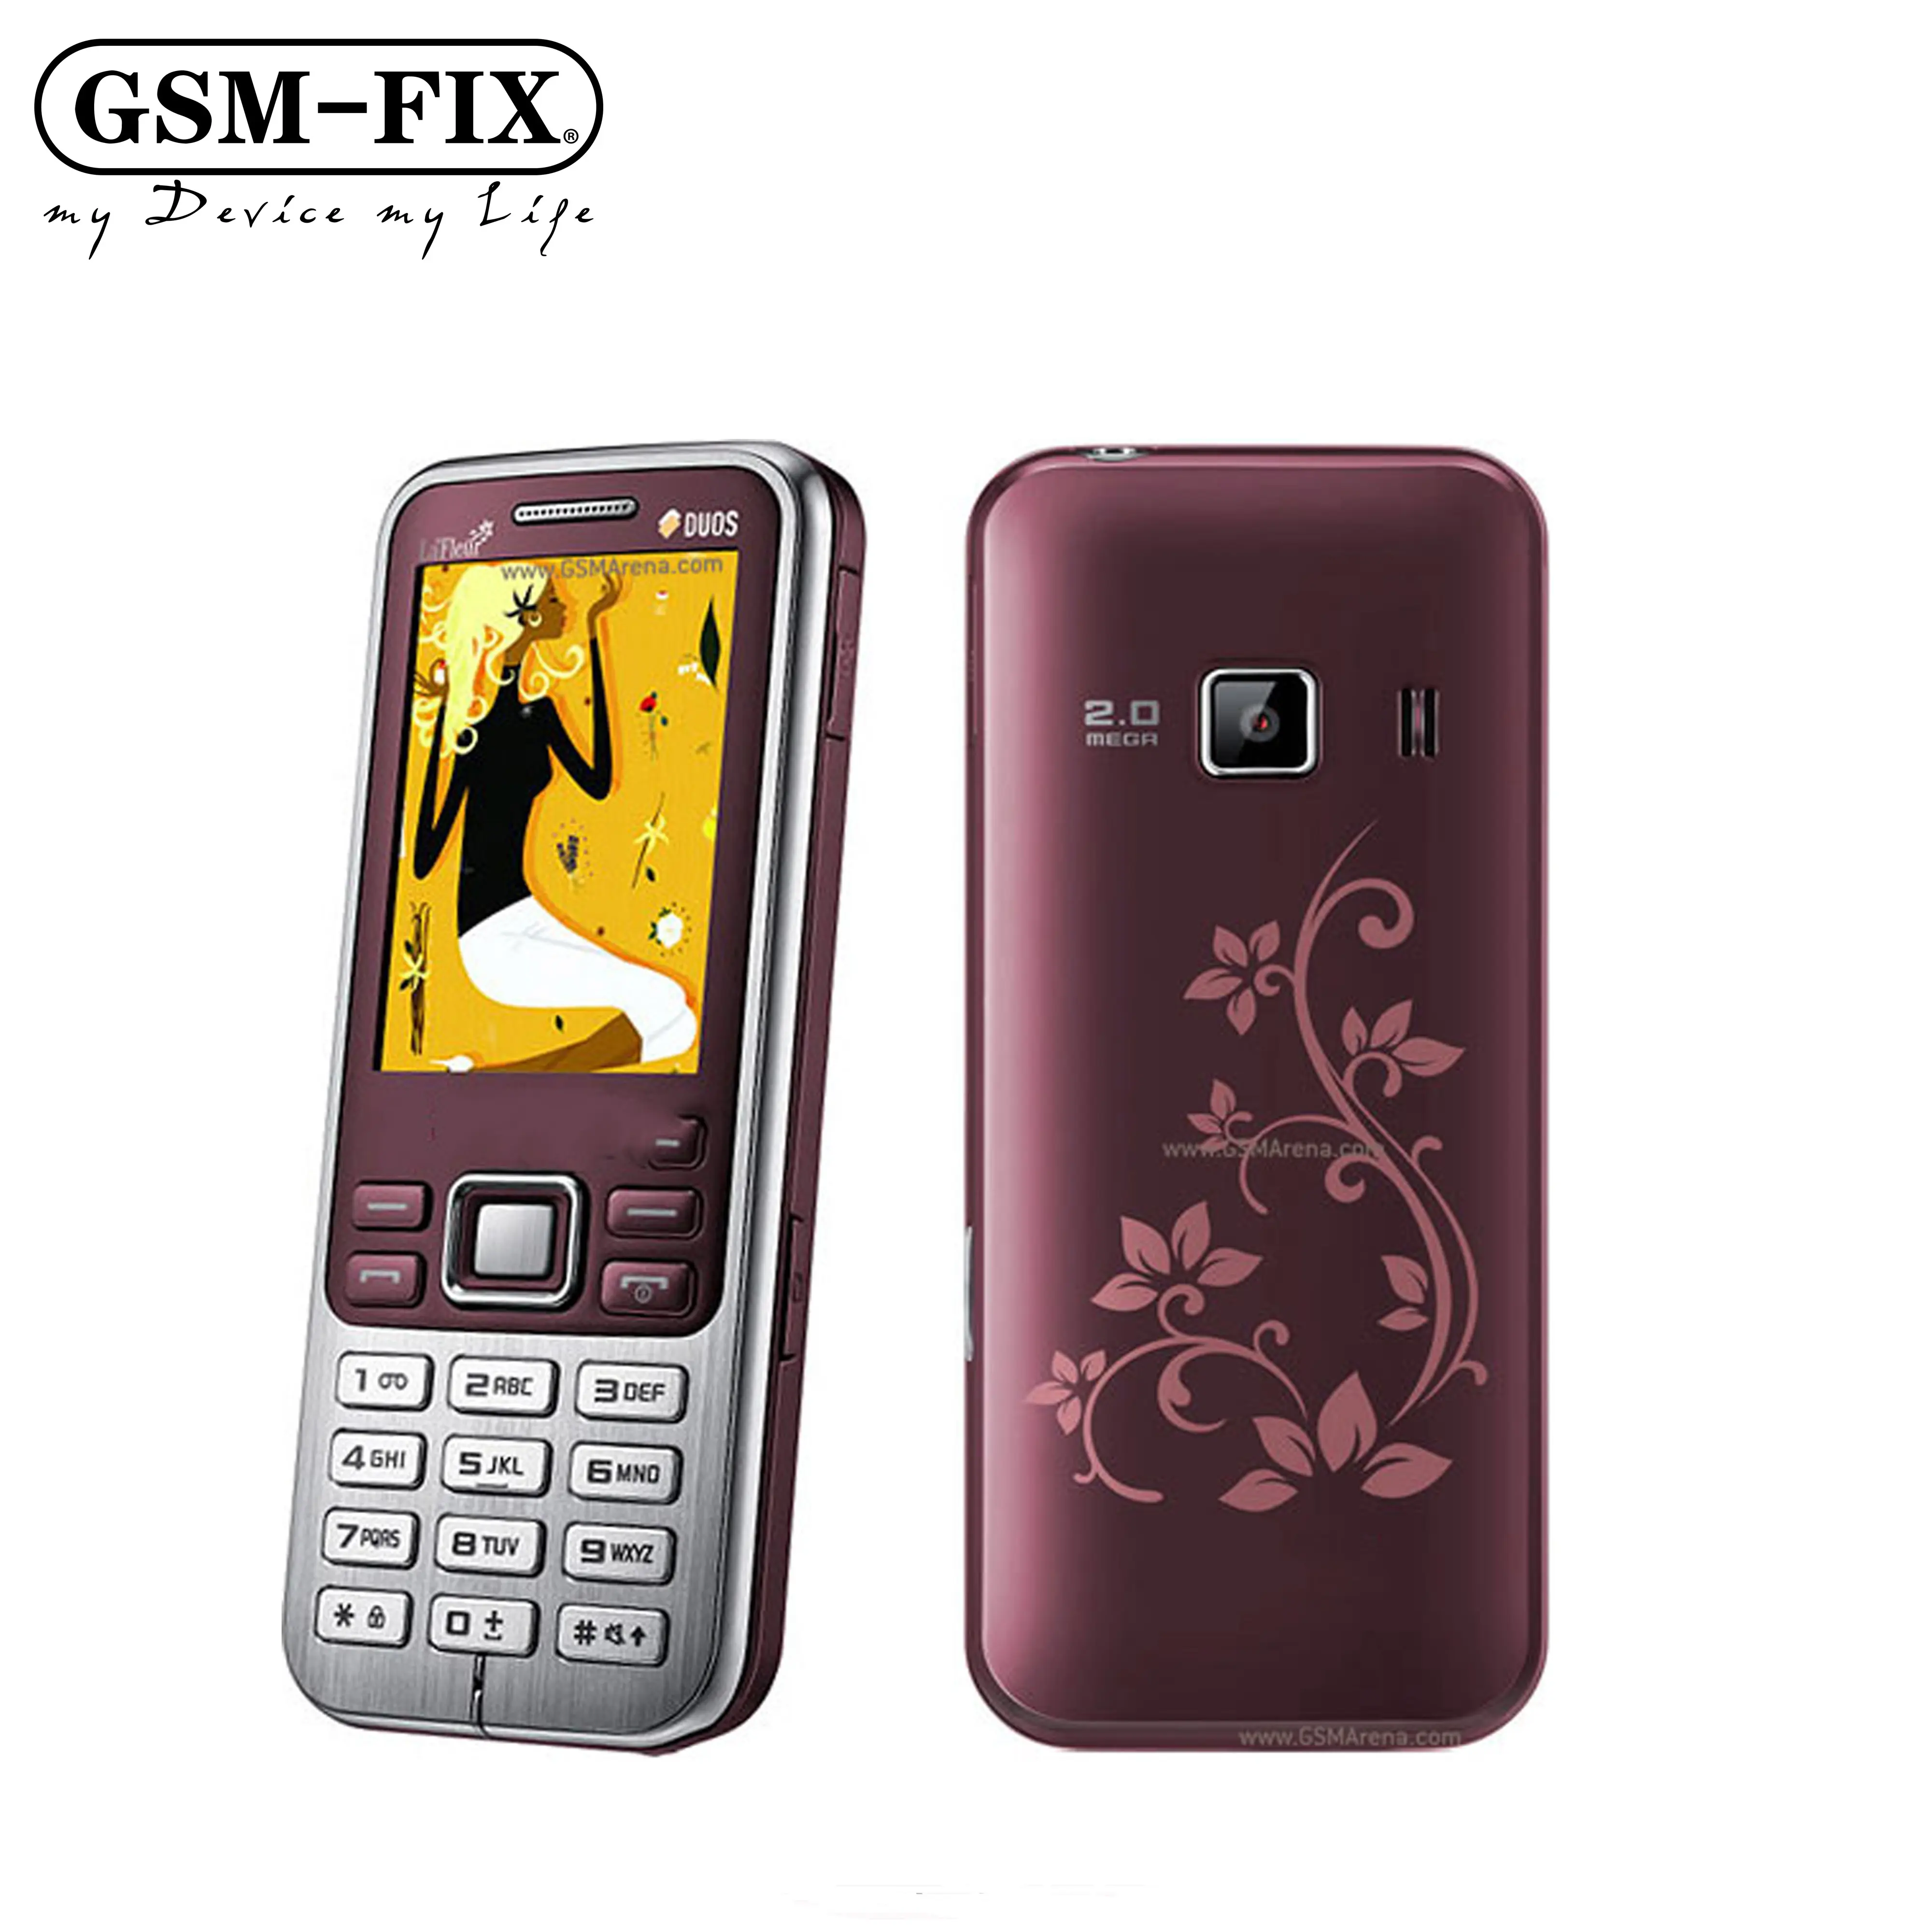 GSM-FIX For Samsung C3322 C3322i Original Unlocked DUOS Metro Duos C3322 La Fleur Dual Sim Mobile Phone